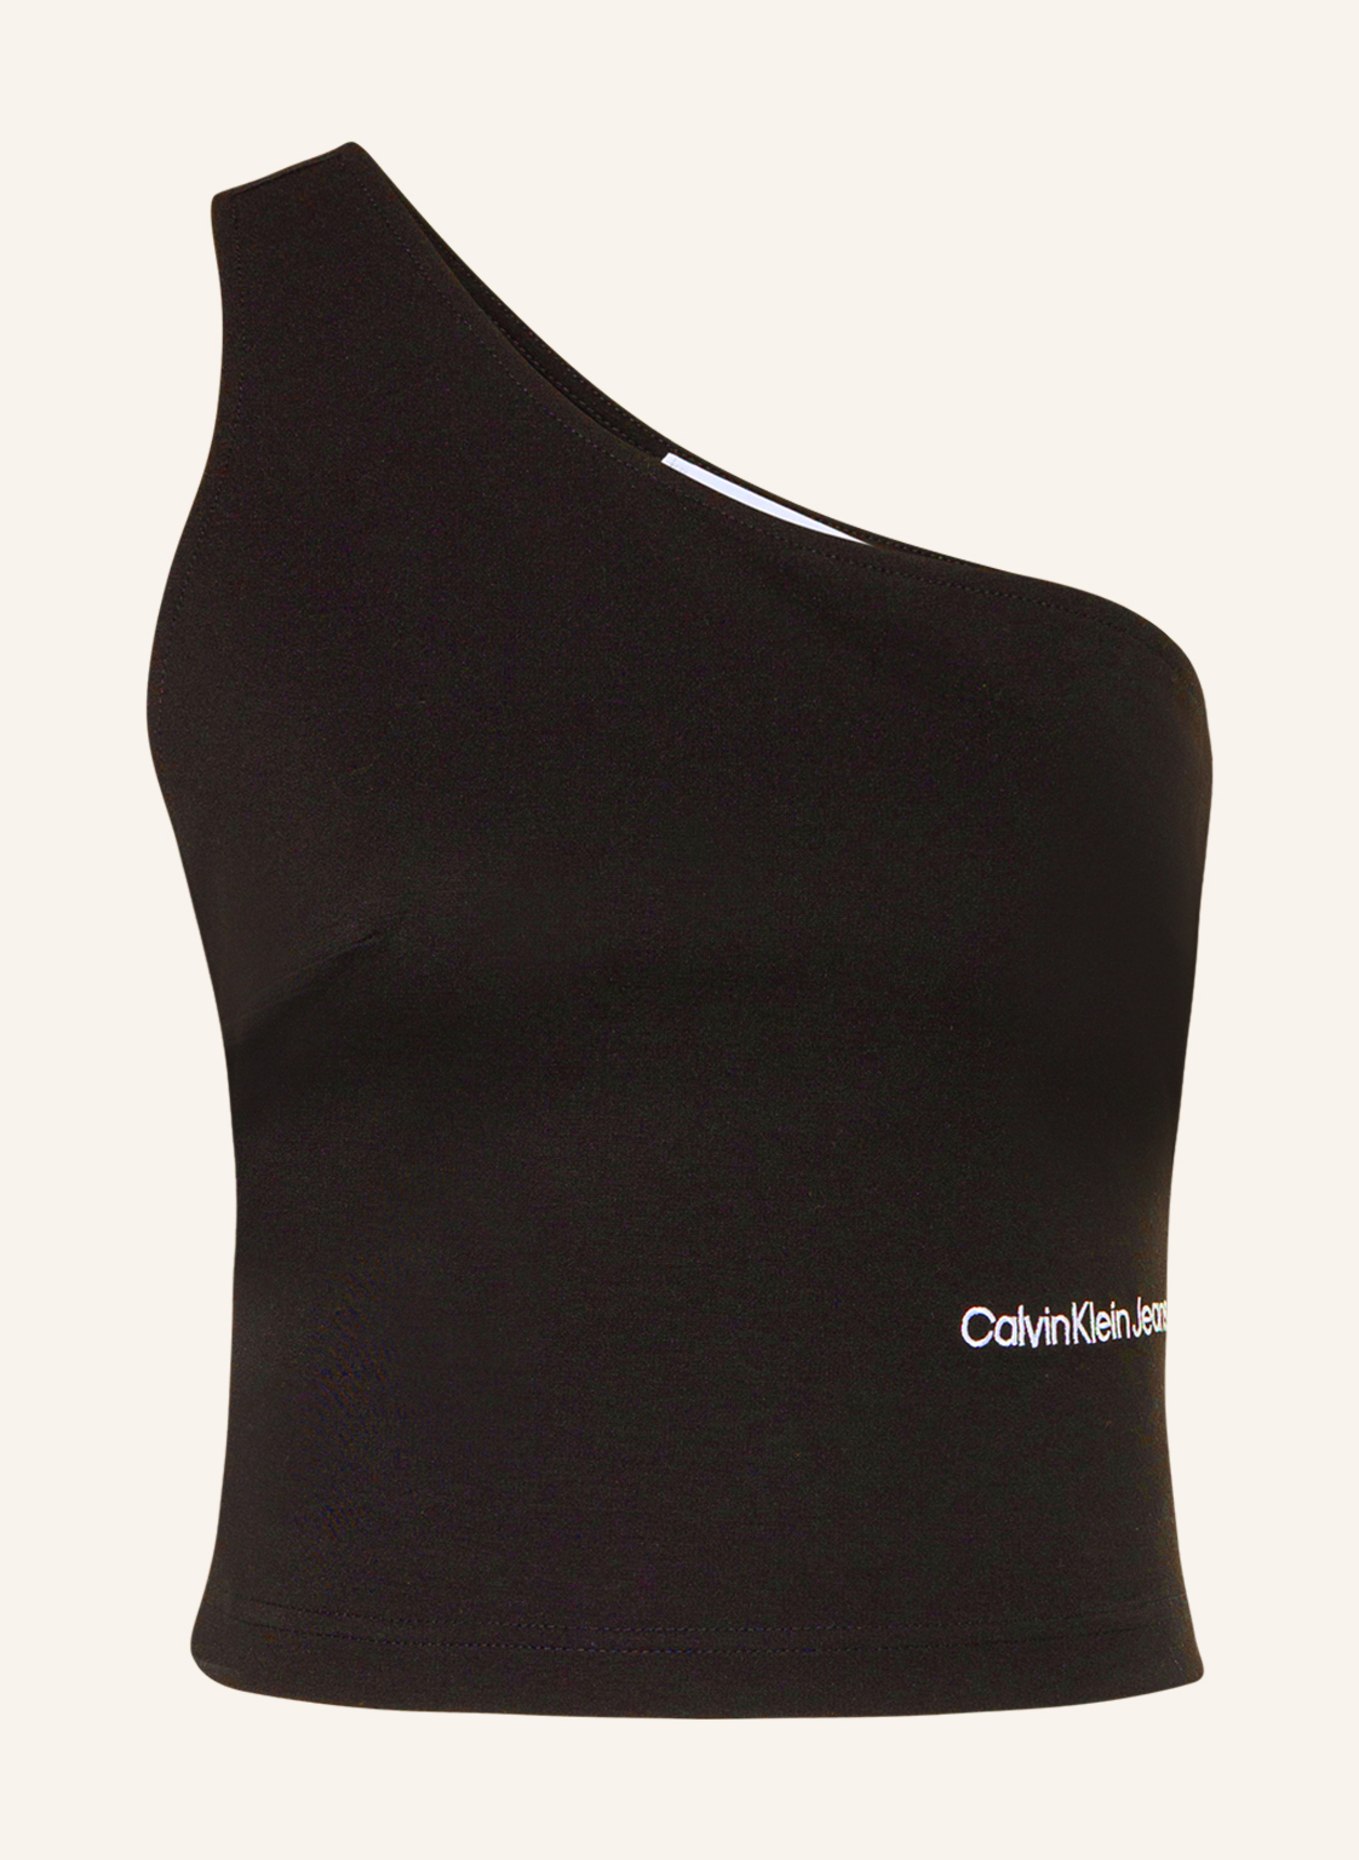 Calvin Klein Jeans One-shoulder top, Color: BLACK (Image 1)